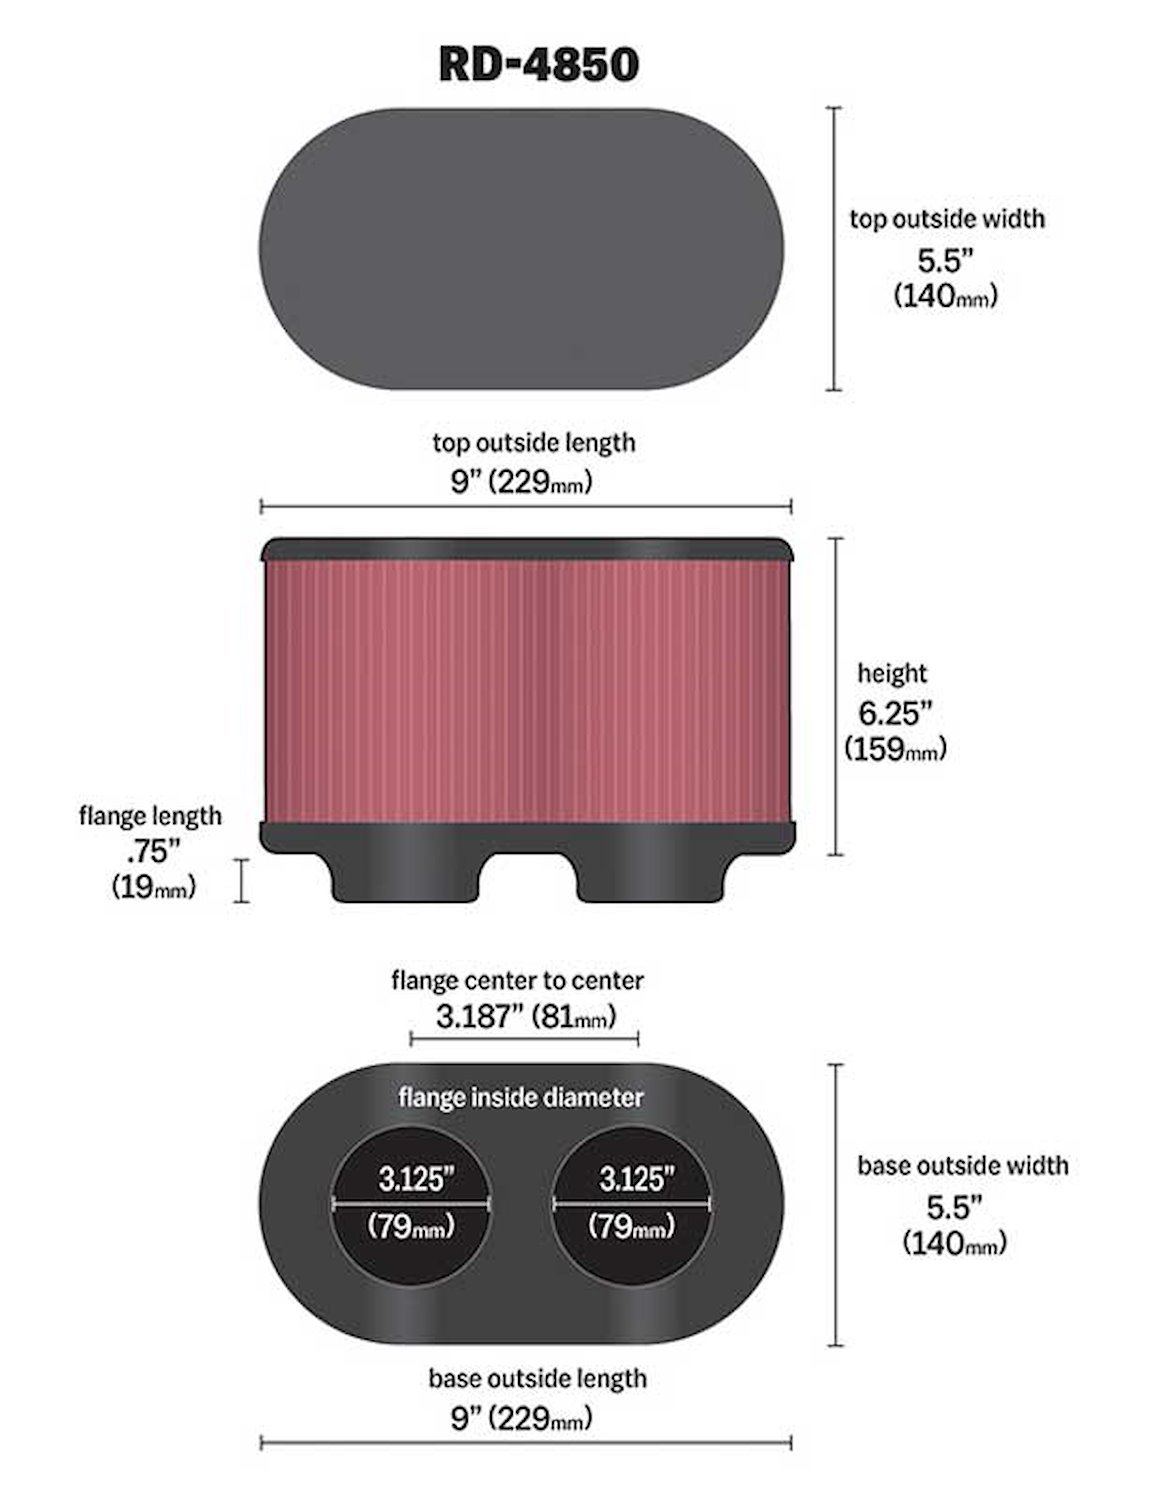 Dual Flange Oval Filter Flange inside Dia - F: 3.125" , 79mm